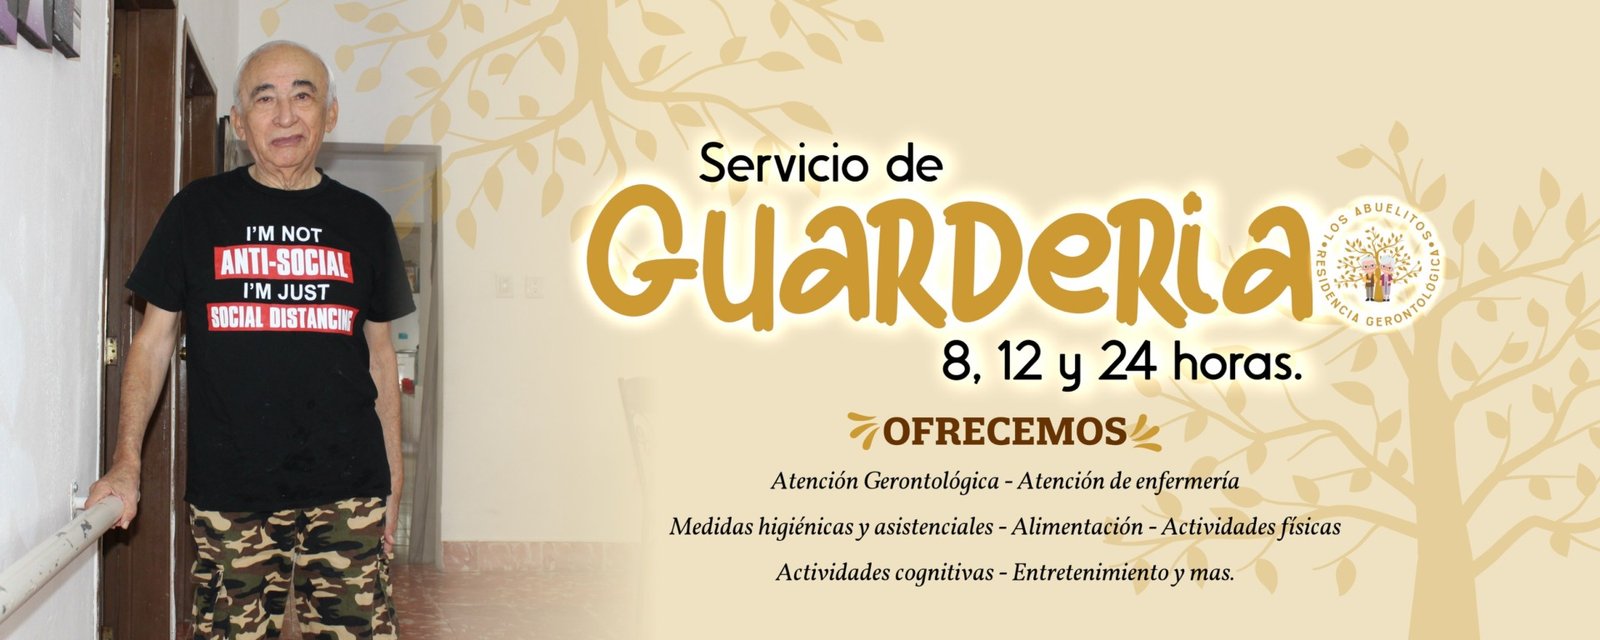 - Festival Enarenarte en Sabancuy - h-ayuntamiento-del-carmen